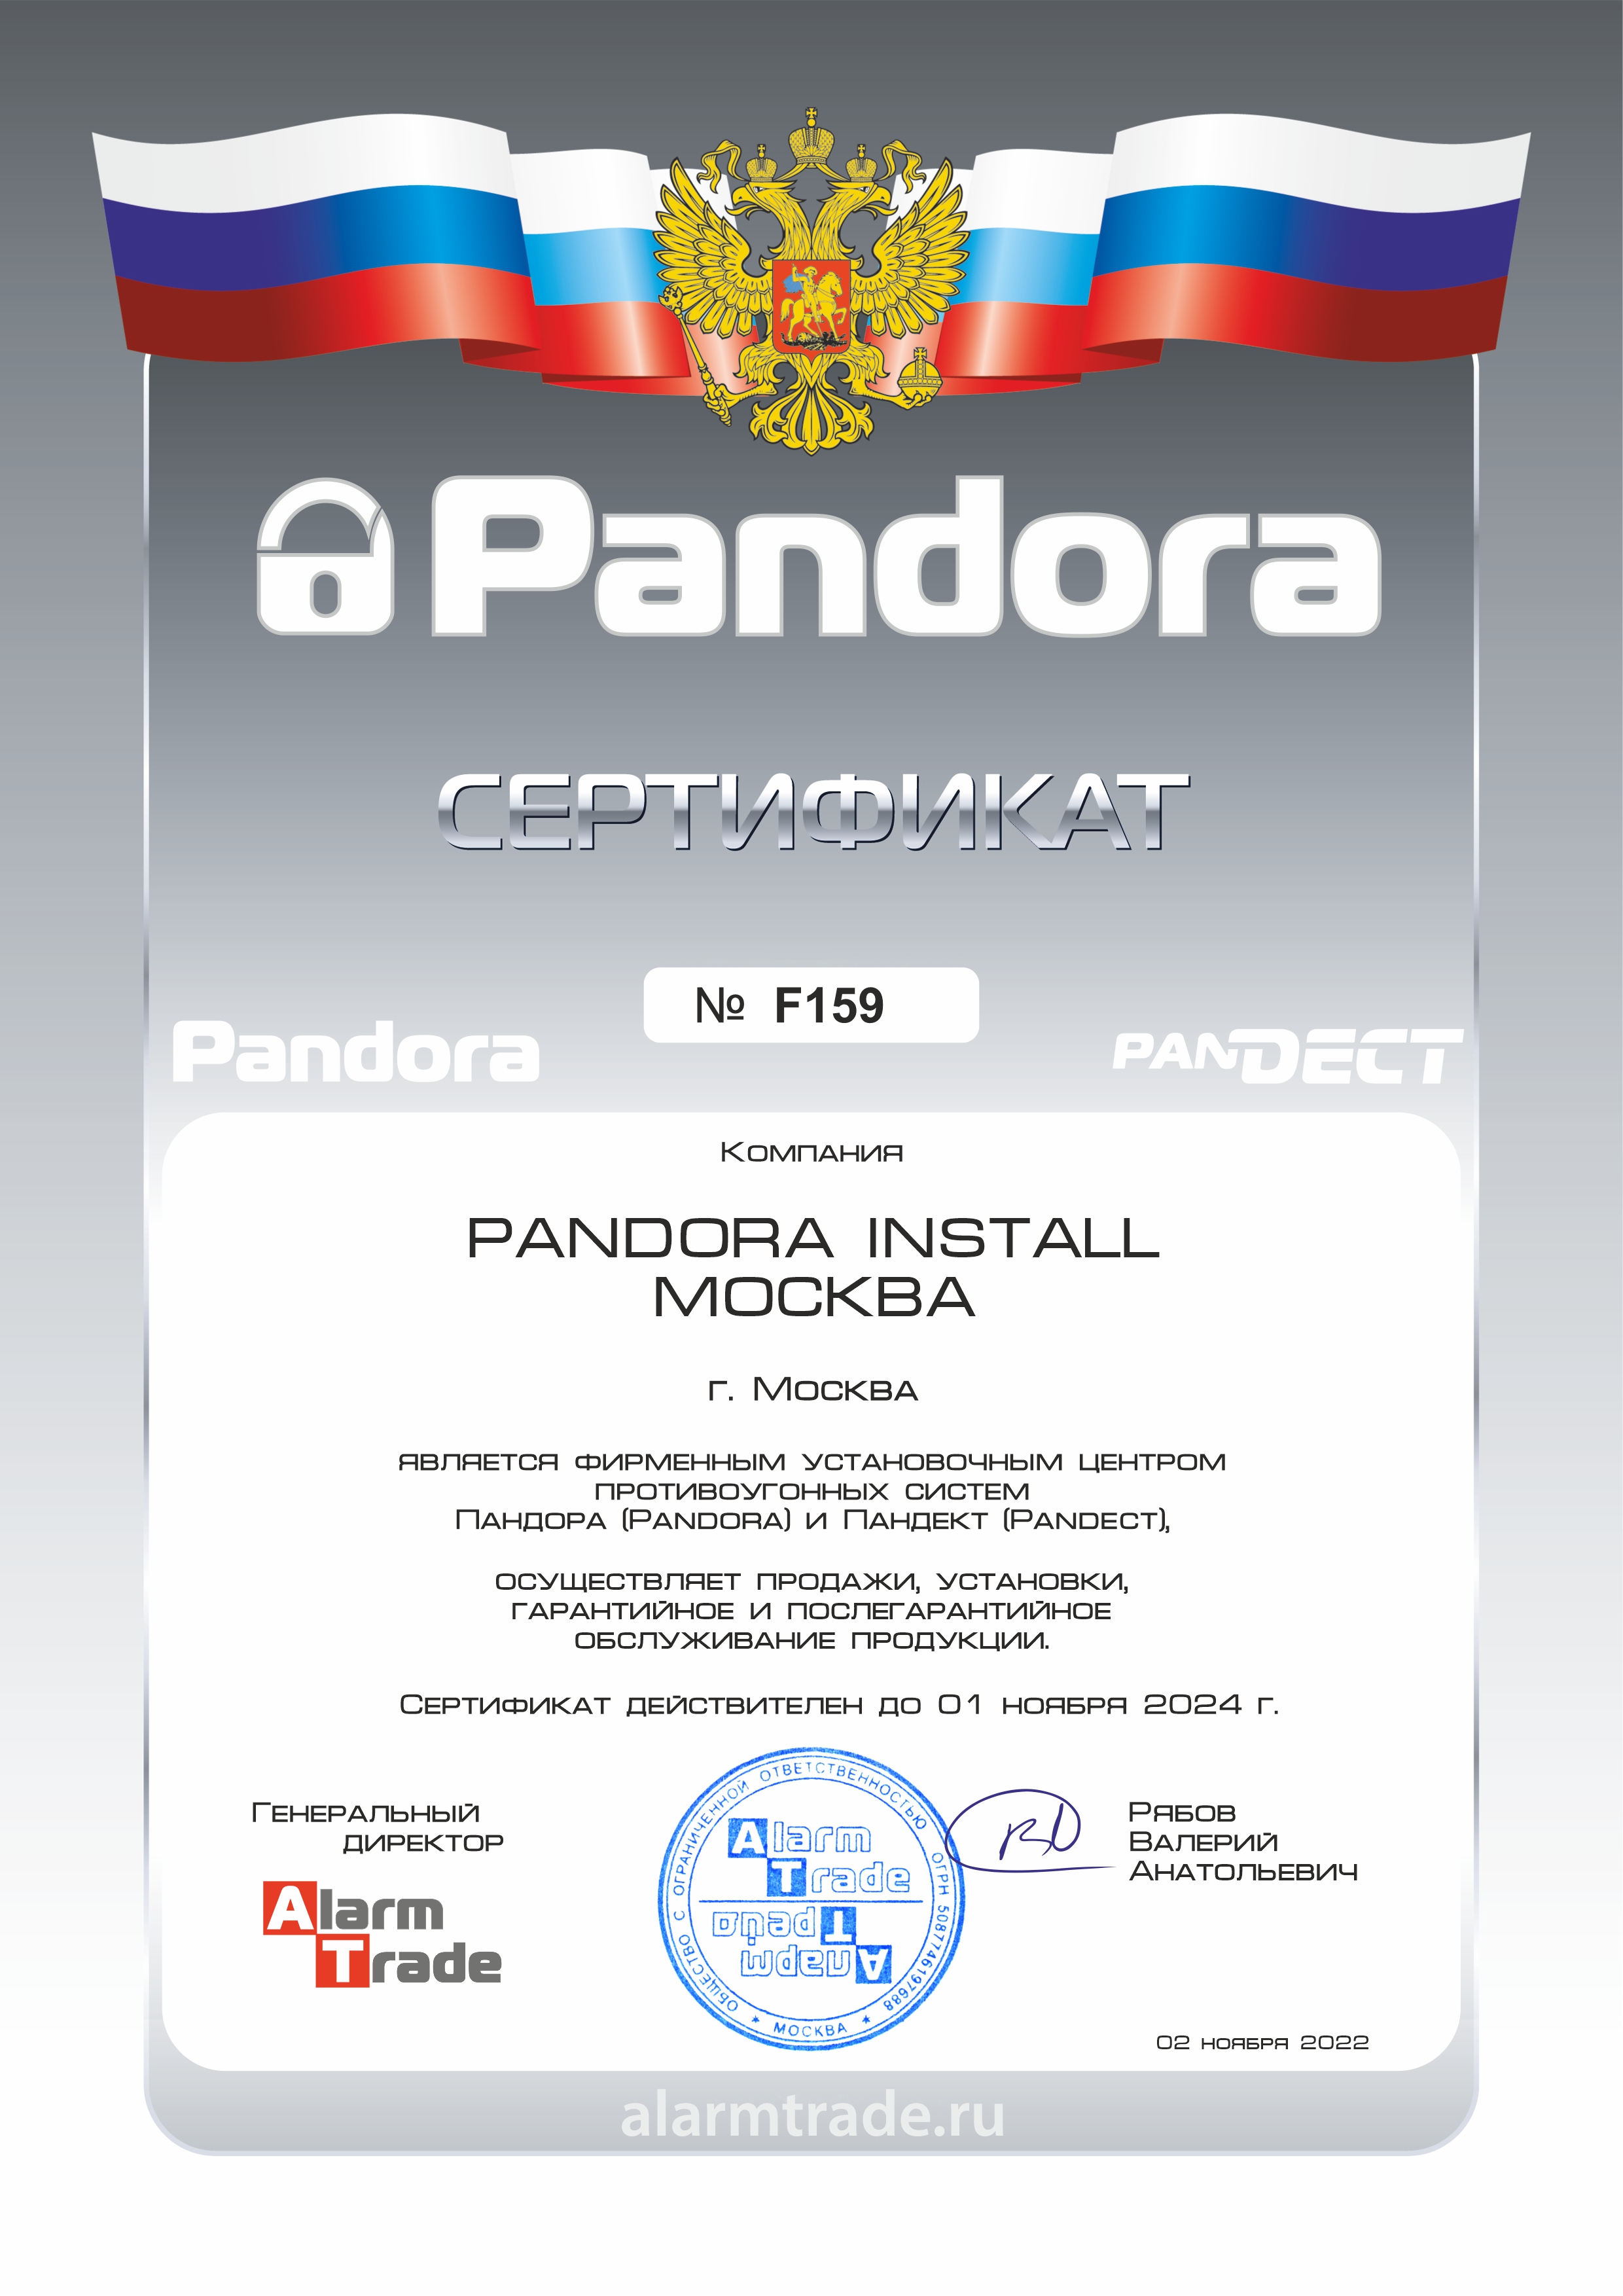 Сертификат официального центра Pandora и Pandect в Москве